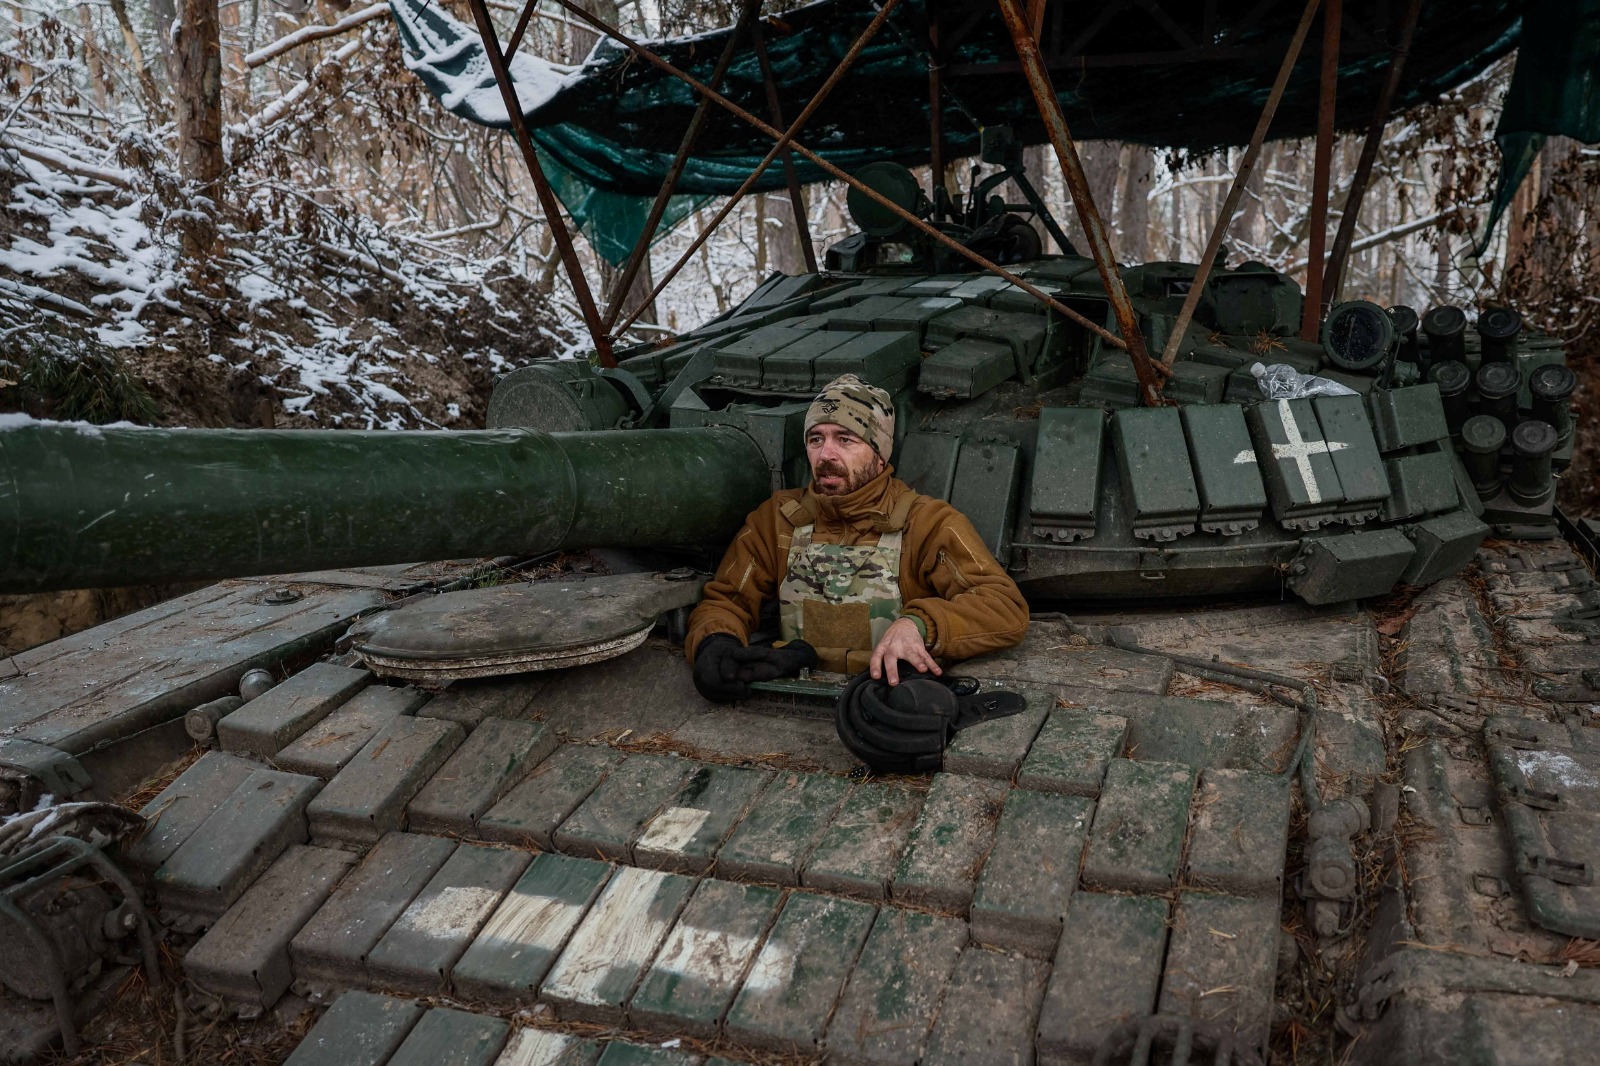 جندي يجلس في دبابة قتال رئيسية من طراز T-72 بالقرب من خط المواجهة، في مكان غير معلوم في منطقة دونيتسك، أوكرانيا. 23 نوفمبر 2023